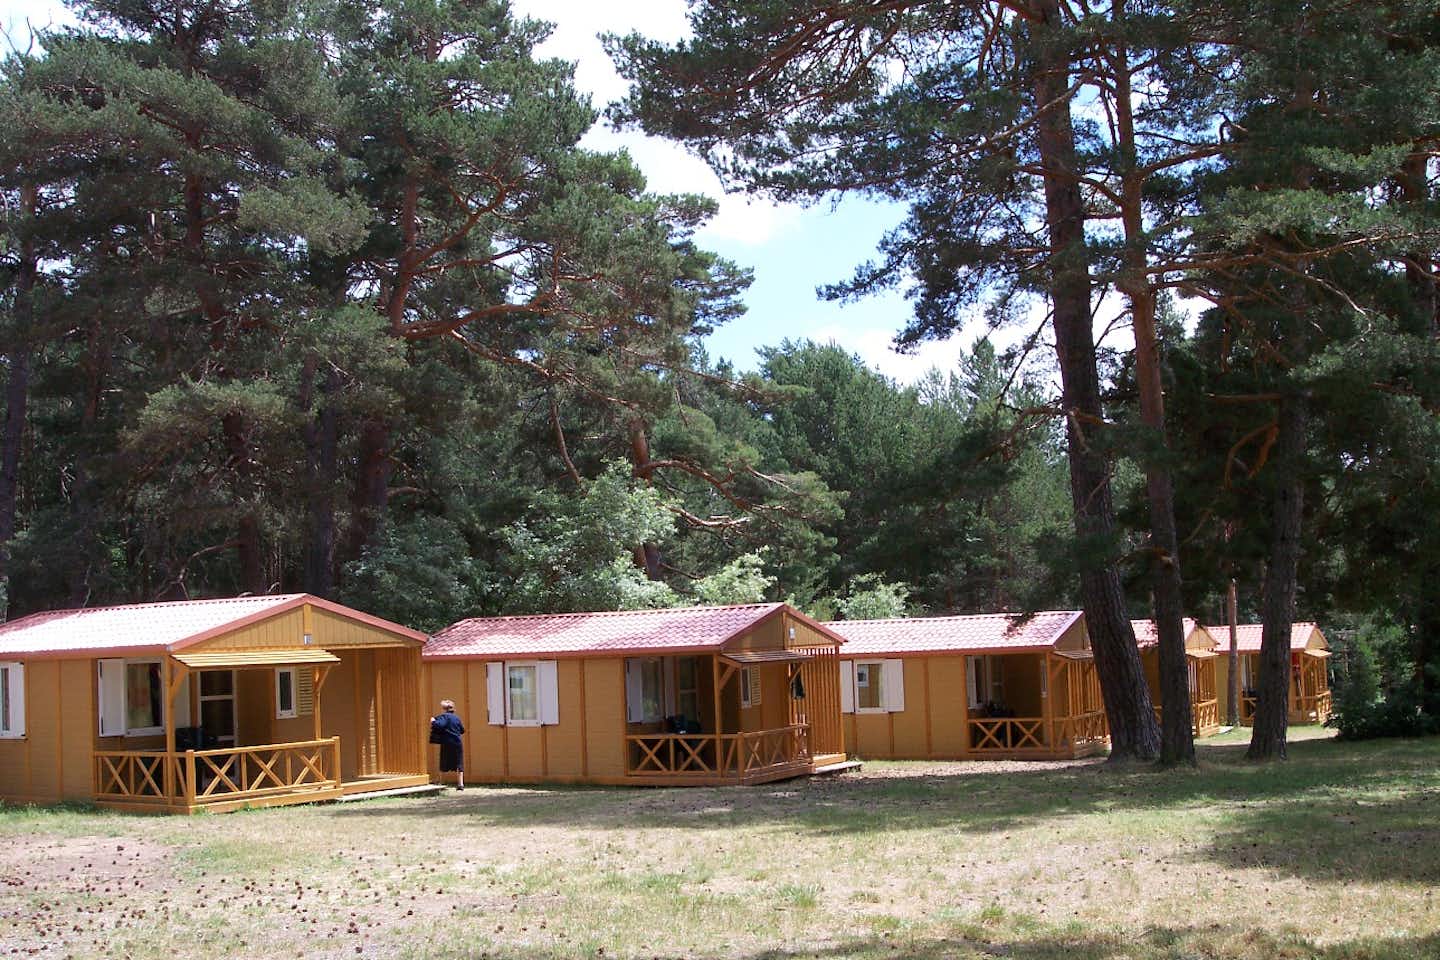 Camping Cobijo - Chalets mit Veranda im Grünen und im Halbschatten der Bäume